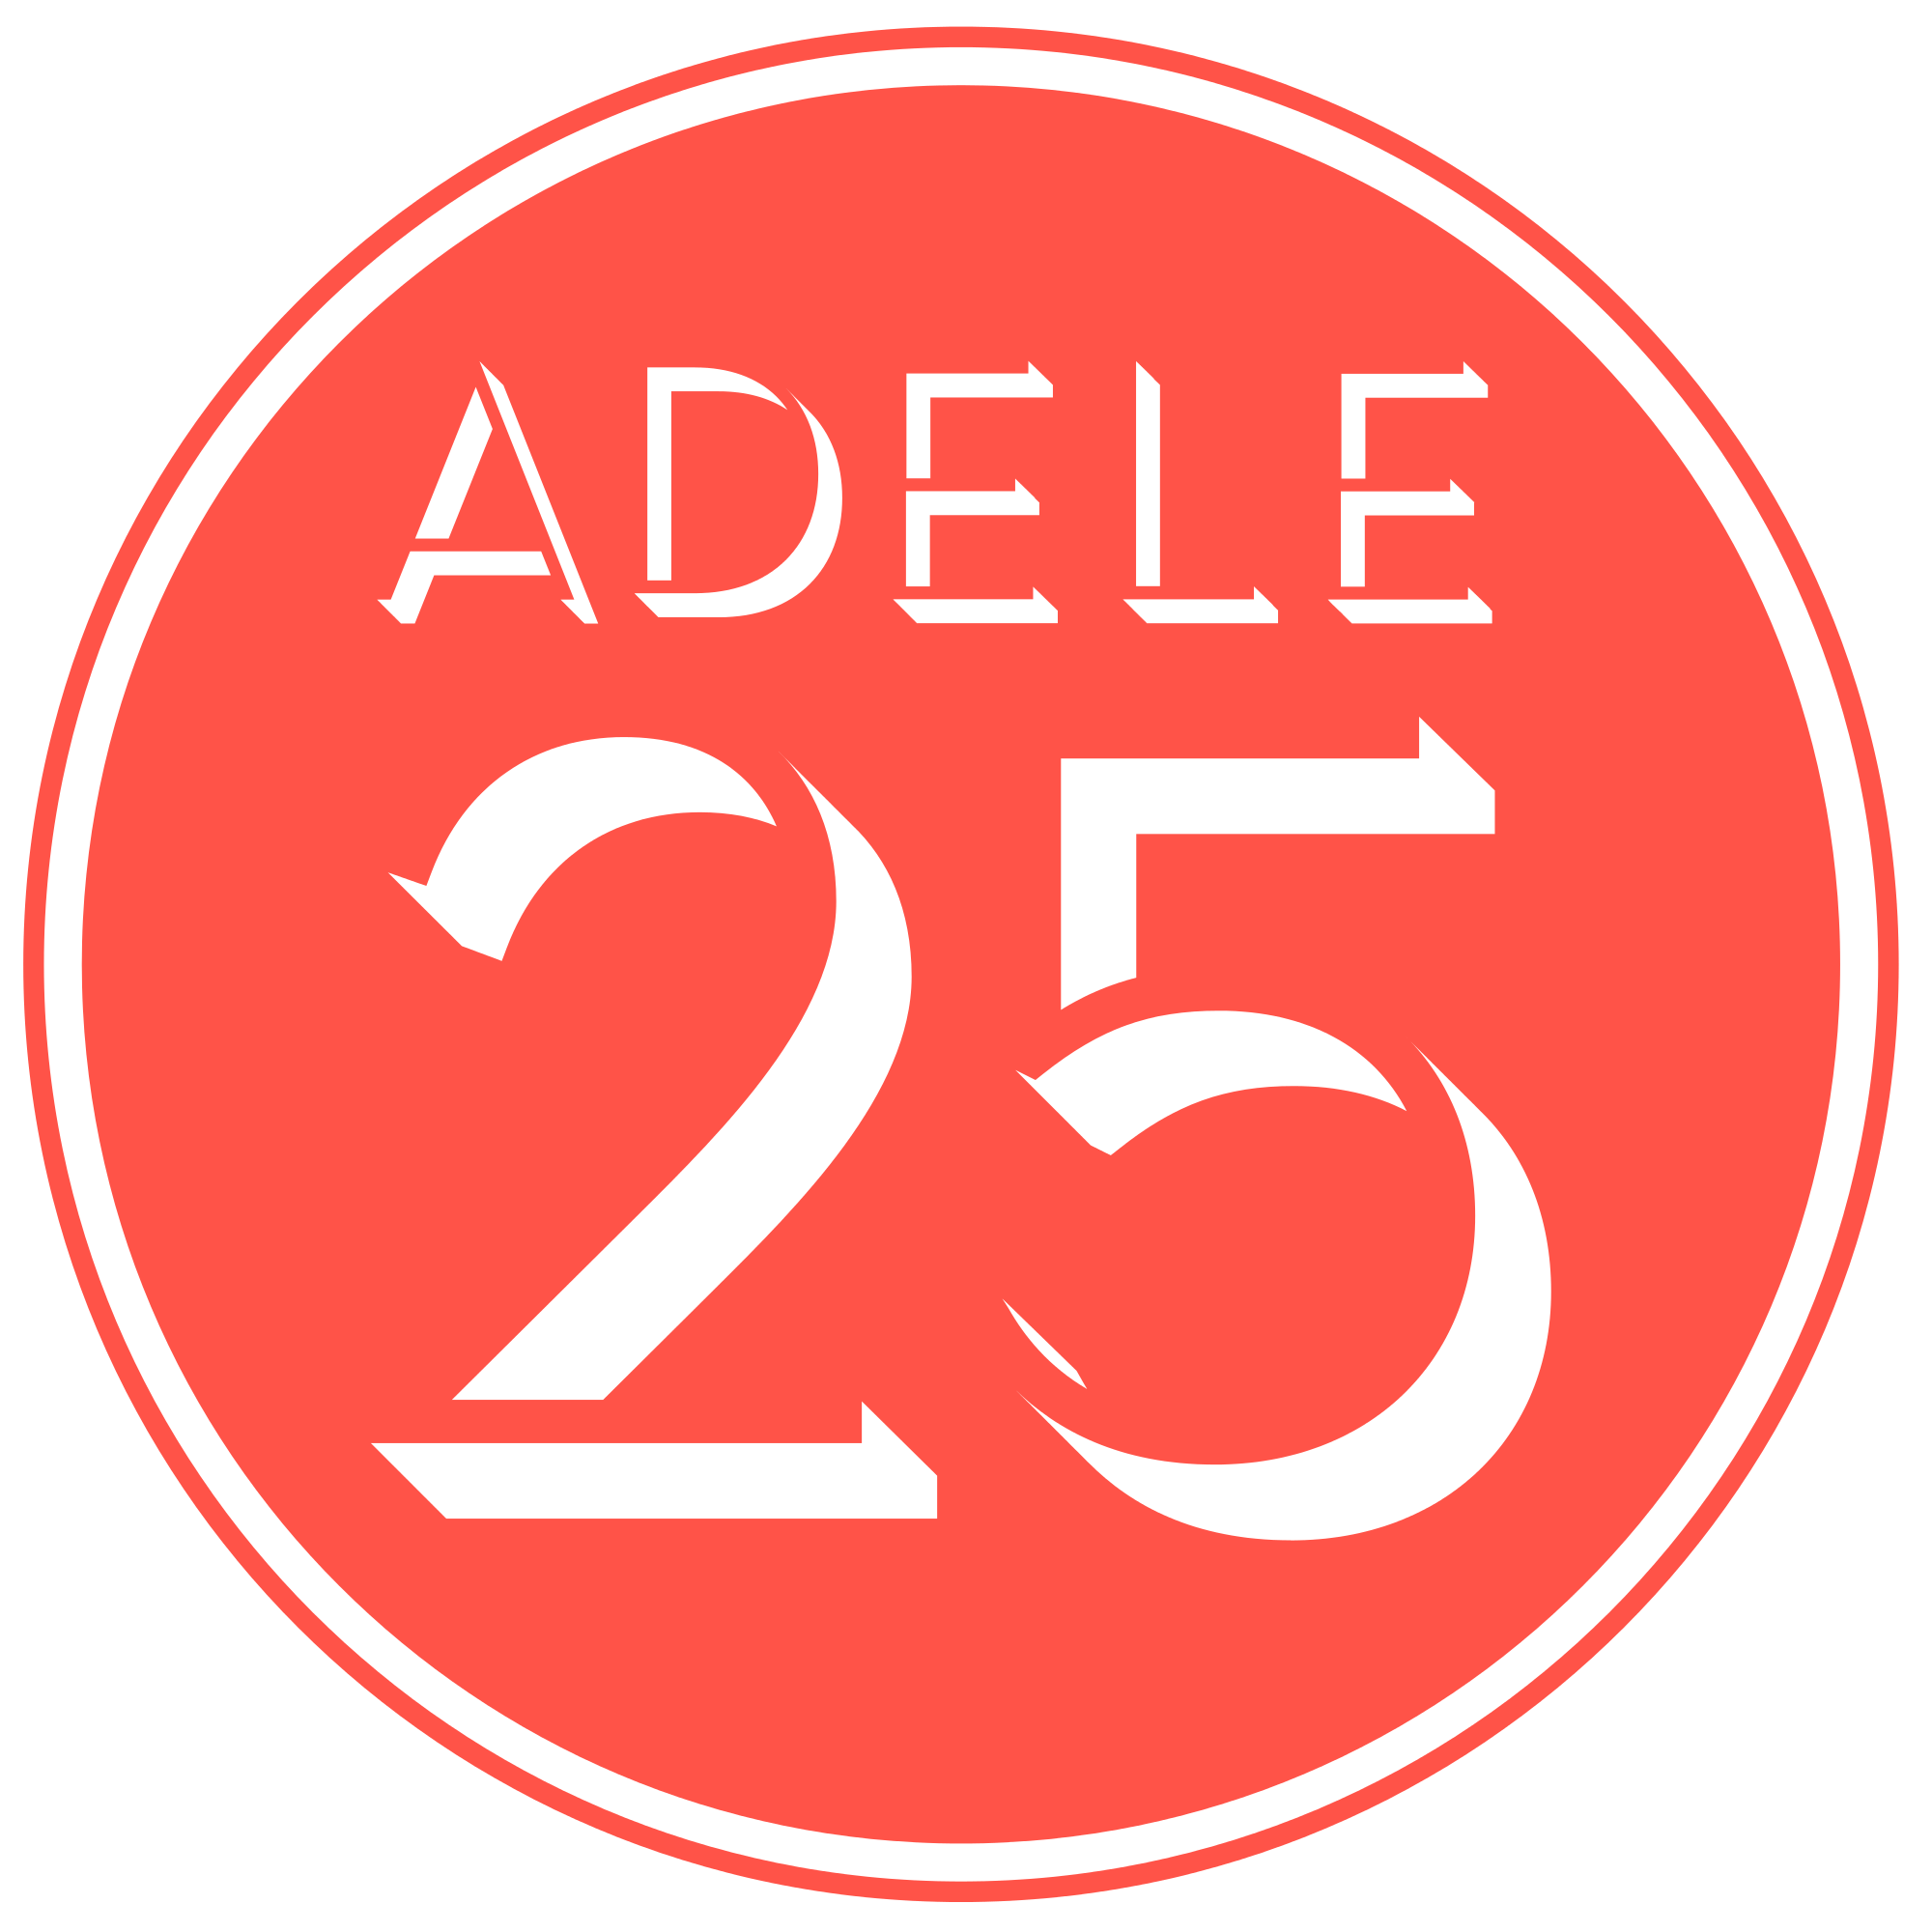 Adele Logo - File:Adele 25 Logo.svg - Wikimedia Commons